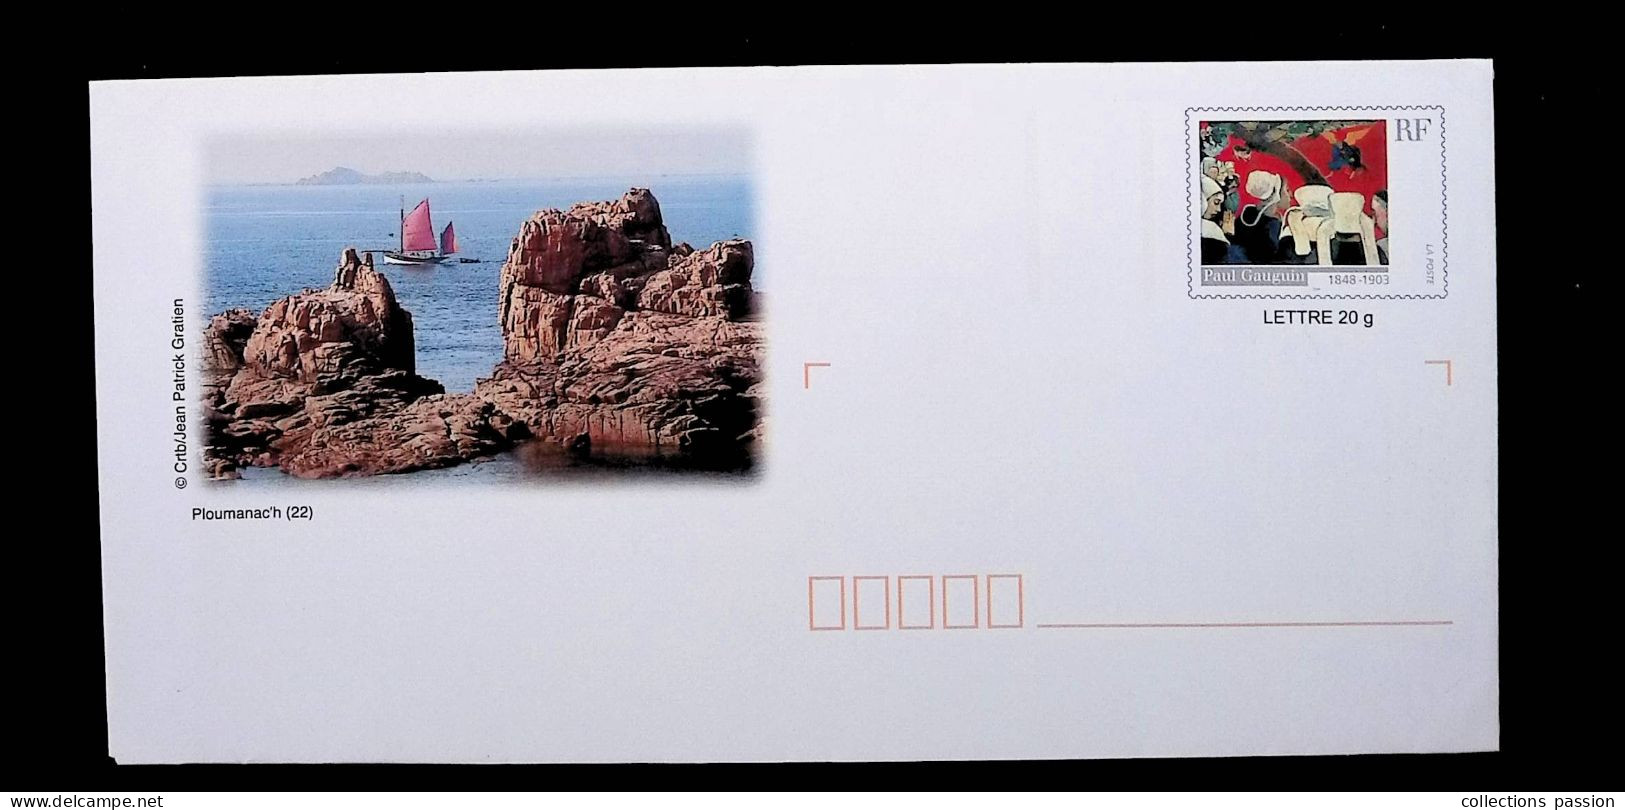 Lettre Prioritaire 20 Gr., Entier Postal, Prêt à Poster, France, Neuf, P. Gauguin, Ploumanac'h, 22, Frais Fr: 1.85 E - Prêts-à-poster:  Autres (1995-...)